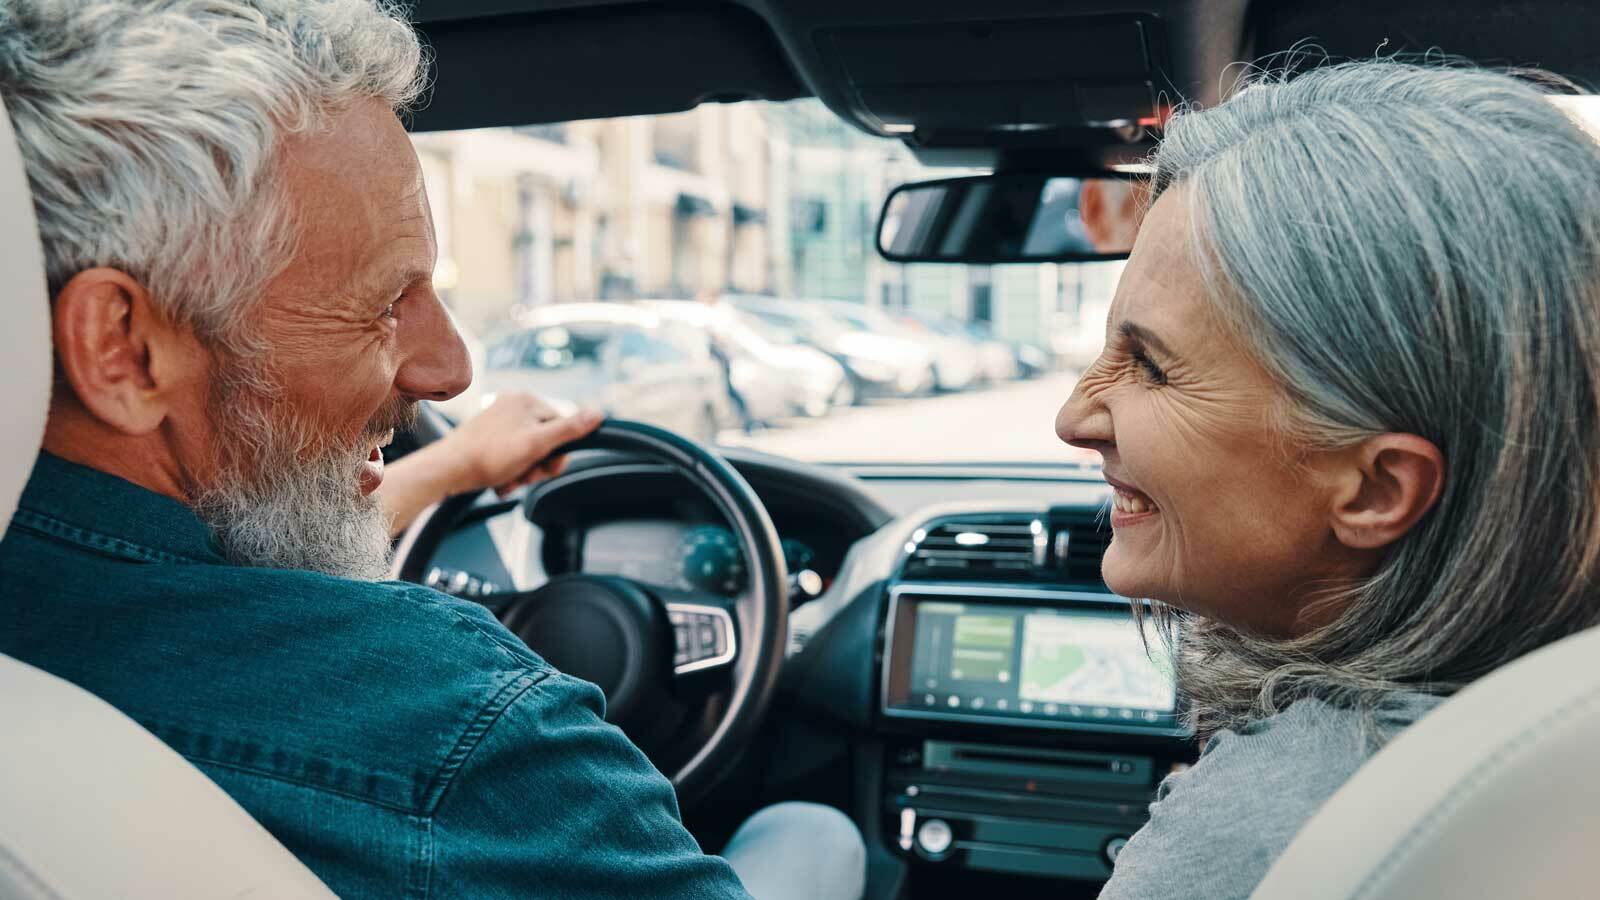 Autokauf für Senioren – Überlegungen und Ratschläge für ältere Autofahrer, von der Wahl des Modells bis zur Ausstattung